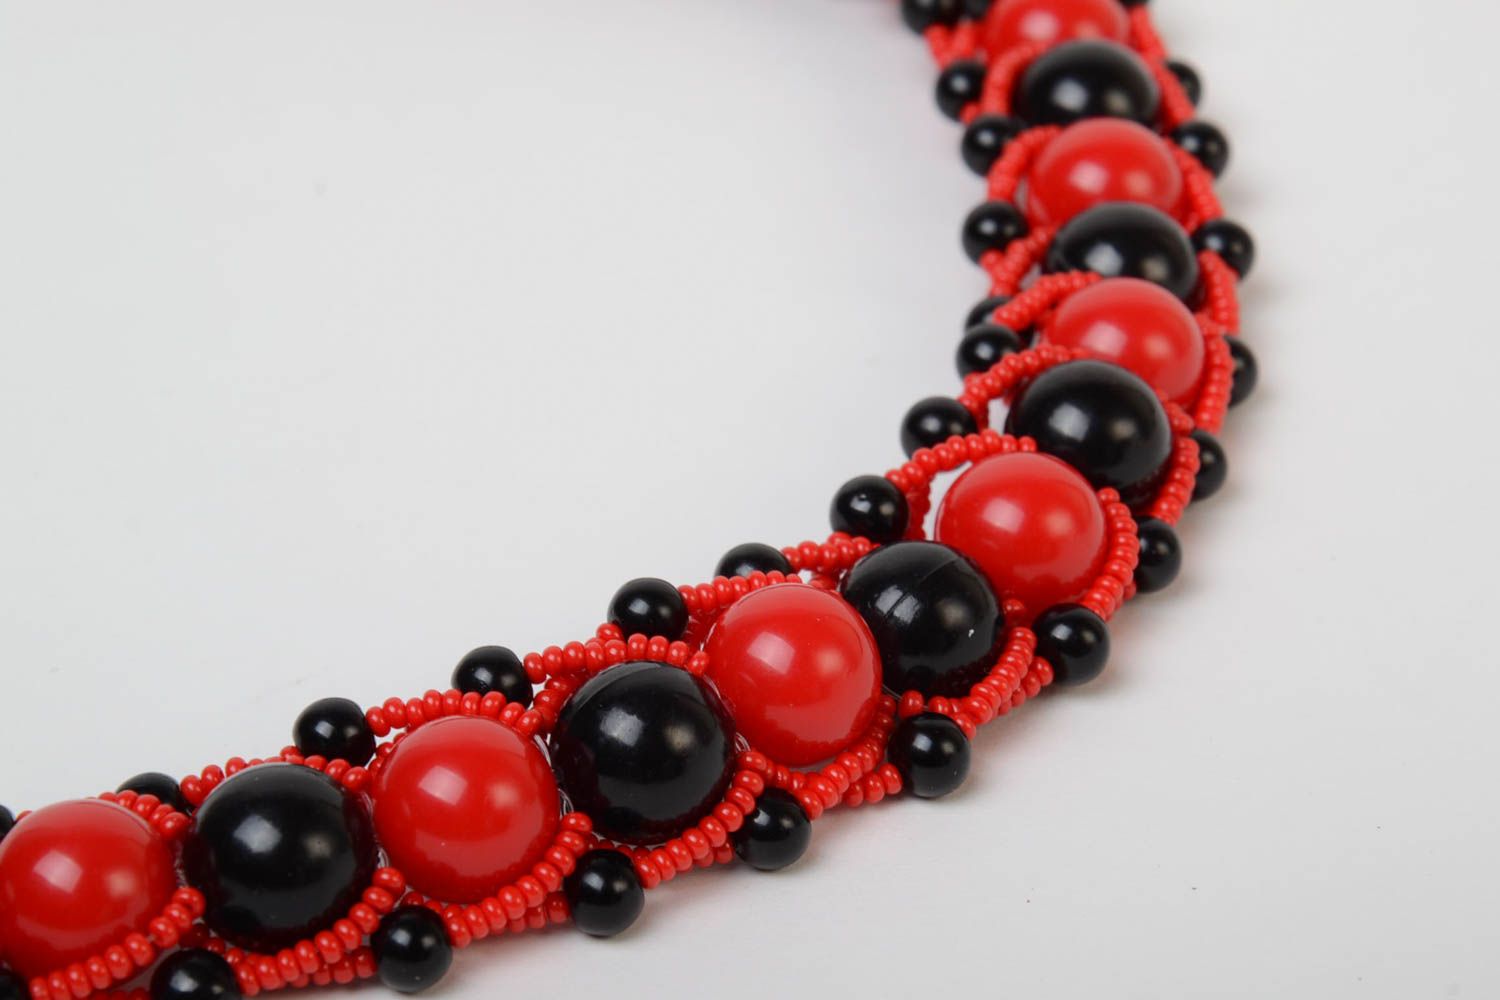 Ожерелье из бусин и бисера красное с черным крупное стильное модное хэнд мейд фото 4